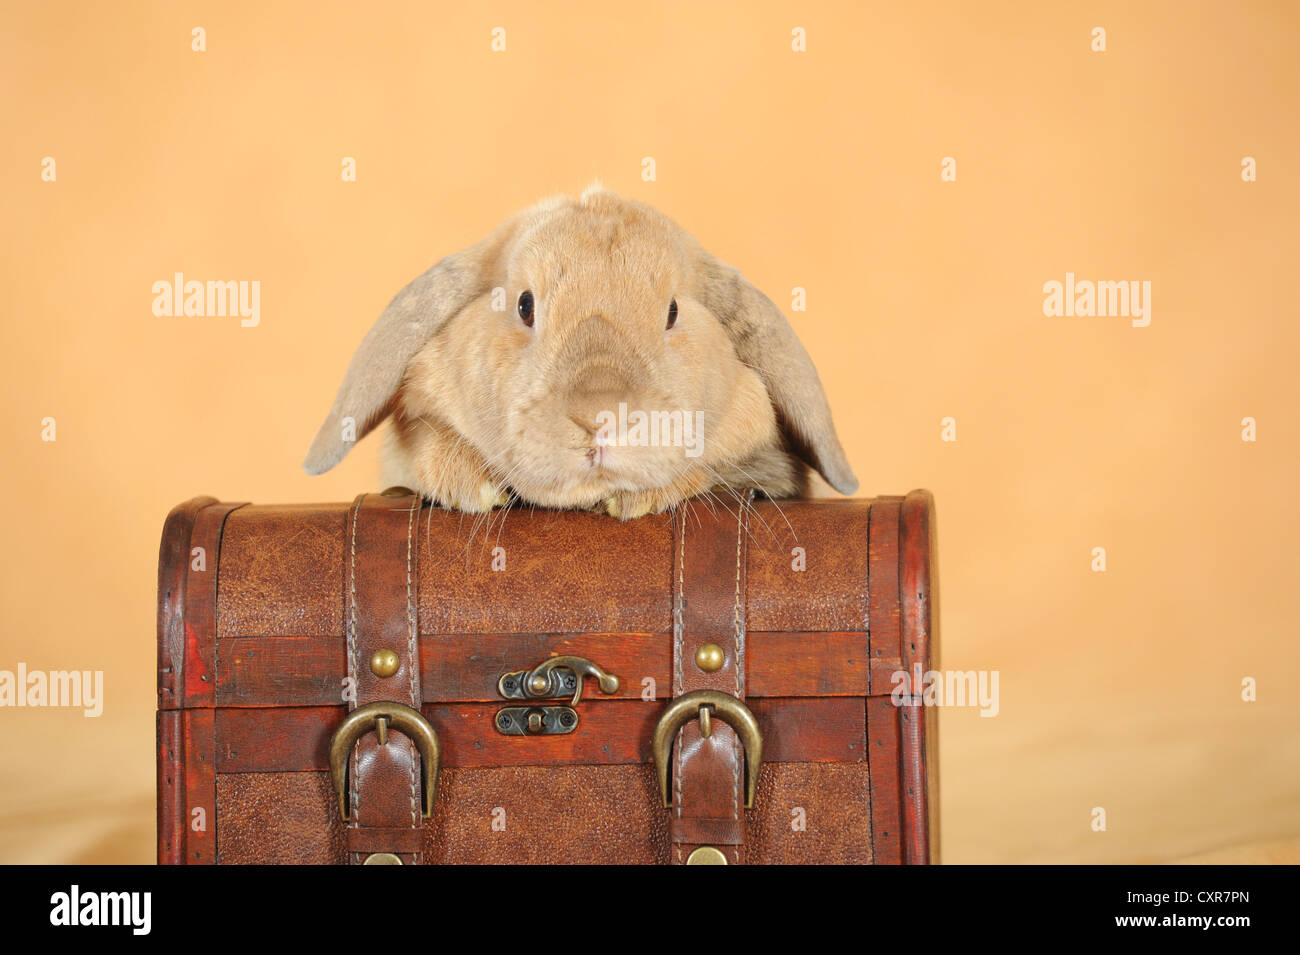 Naine brune Anglais Lop rabbit s'appuyant sur une valise Banque D'Images